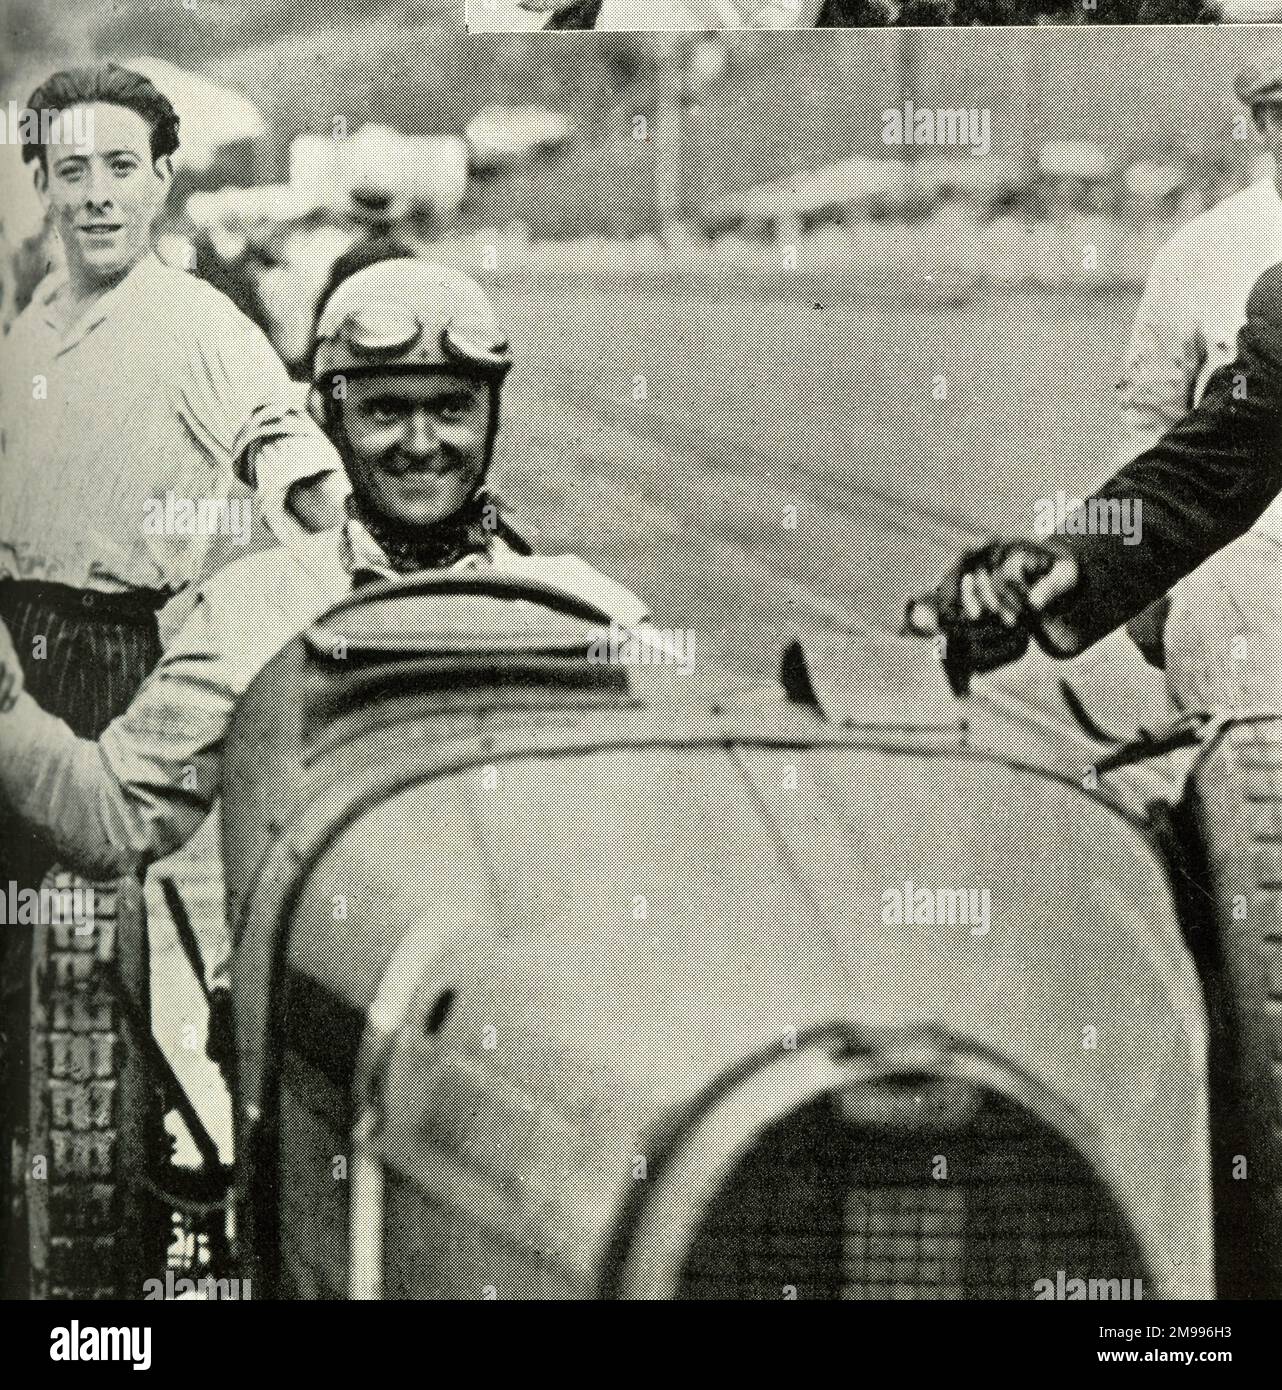 Louis Chiron, pilote de course automobile, au volant d'un Bugatti à San Sebastian, remportant pour la deuxième fois le Grand Prix d'Espagne. Banque D'Images